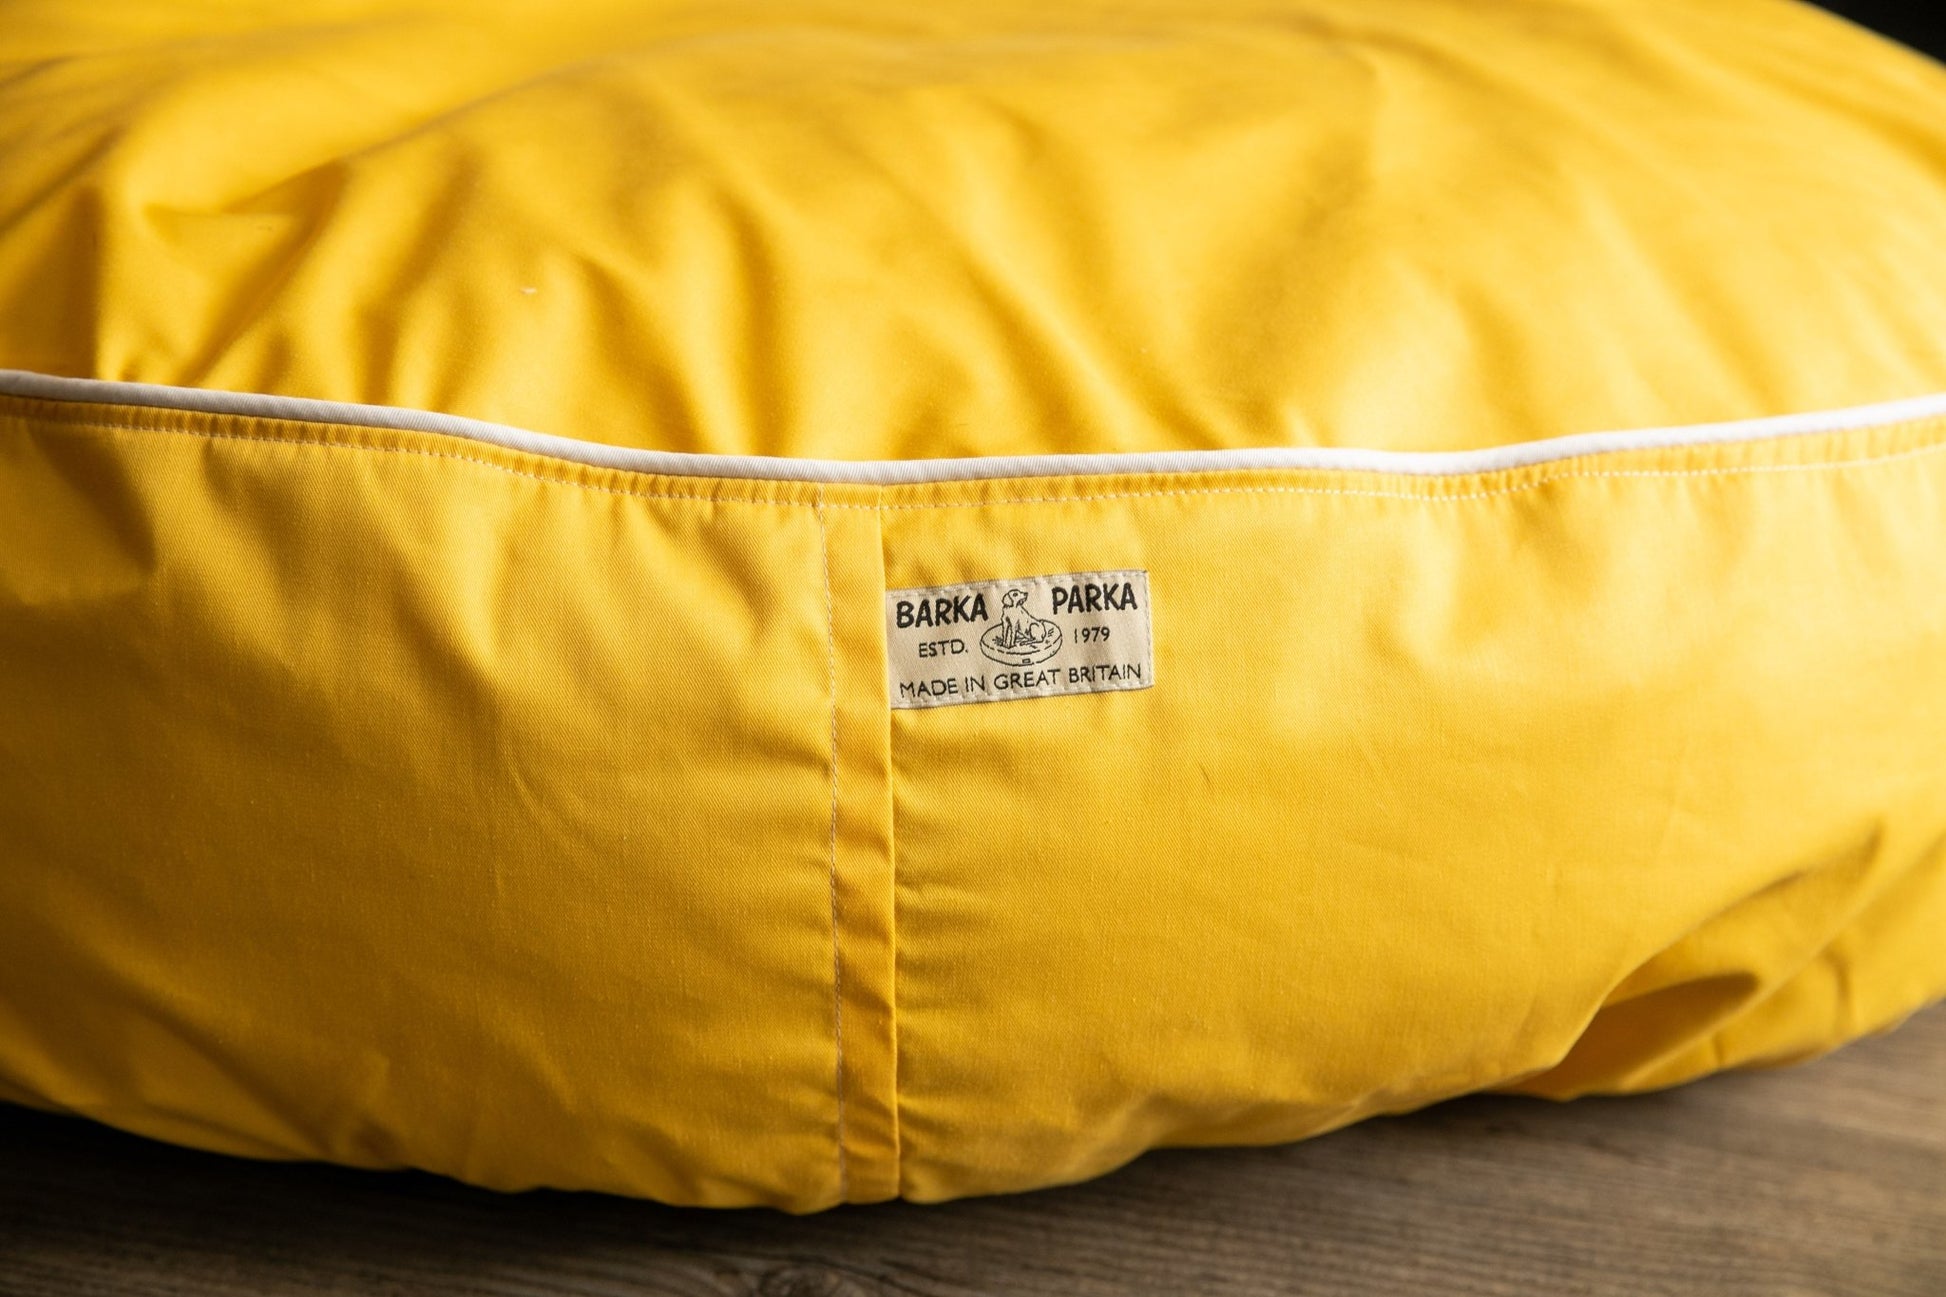 Barka Parka Dog Bed - Yellow and cream piping - Barka Parka Dog Beds